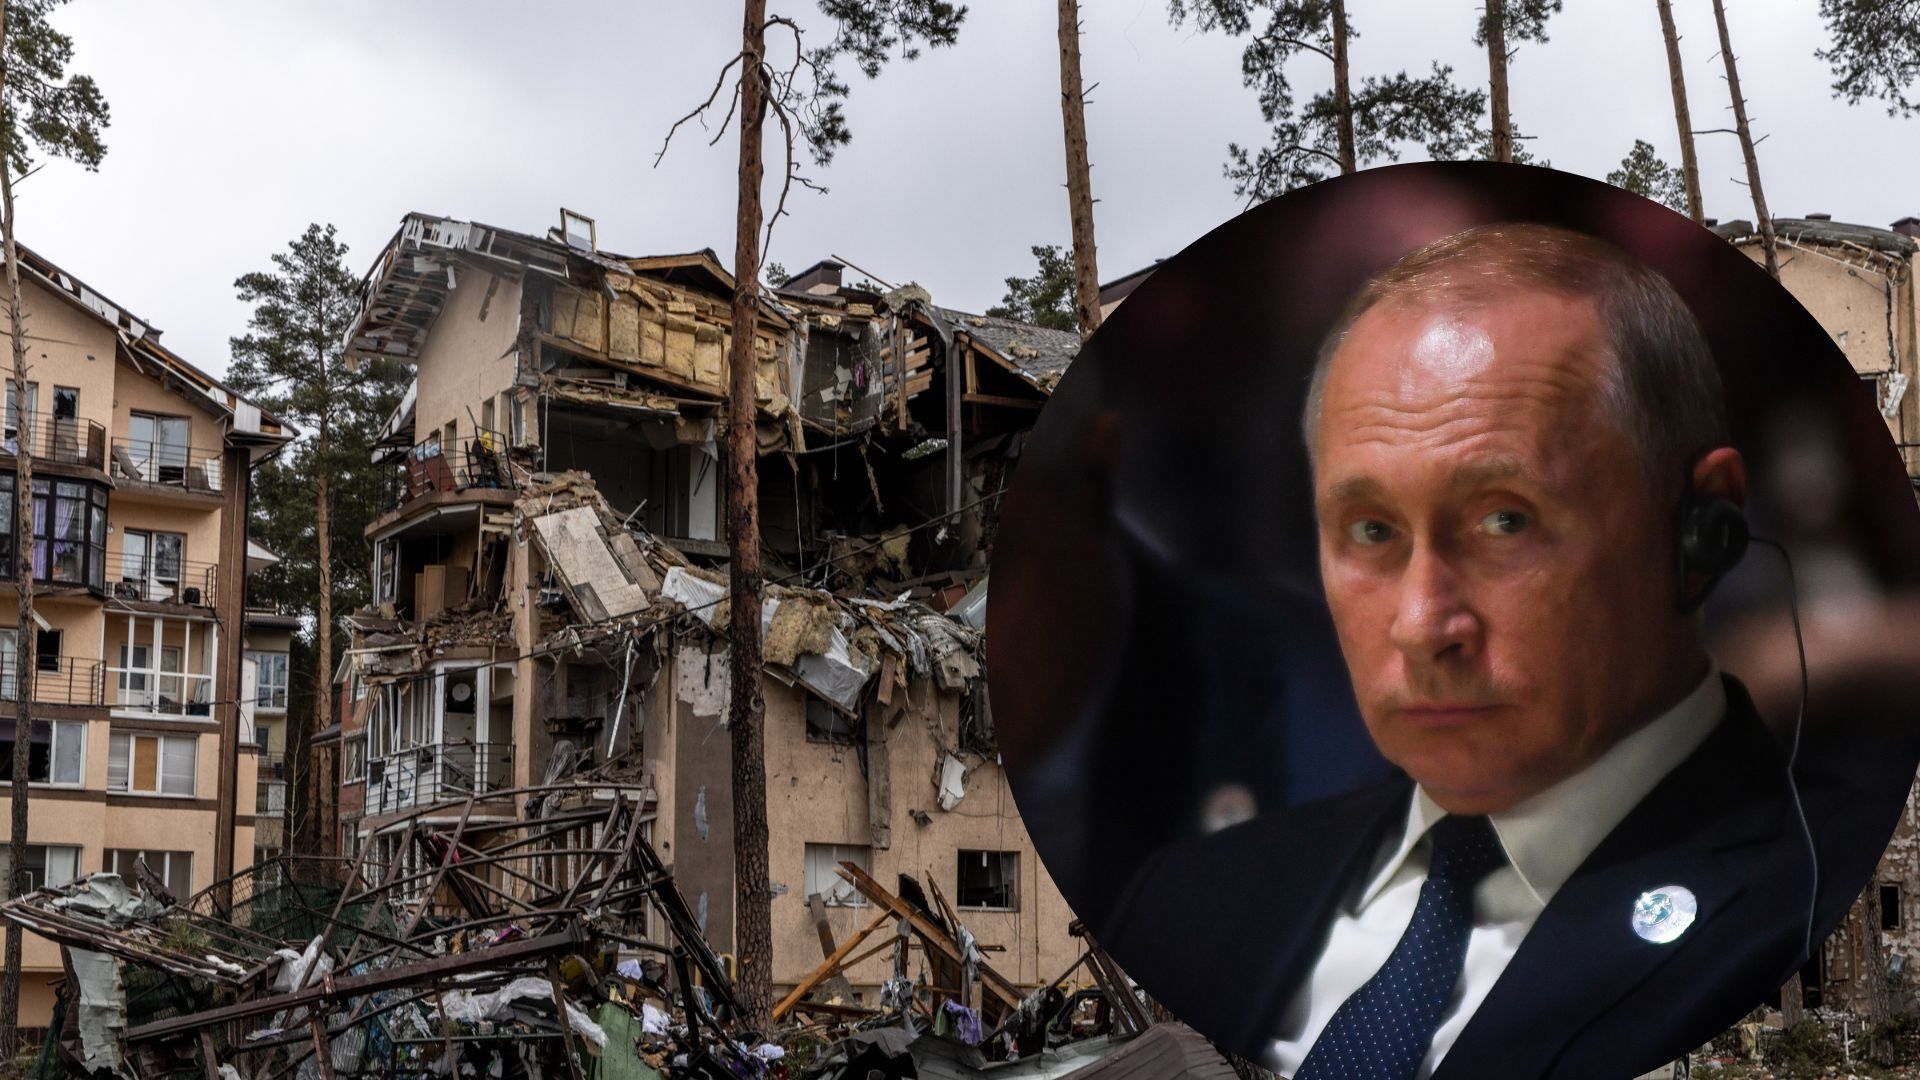 Путин цинично и по-хамски ответил на вопрос о трагедии и убийствах украинцев